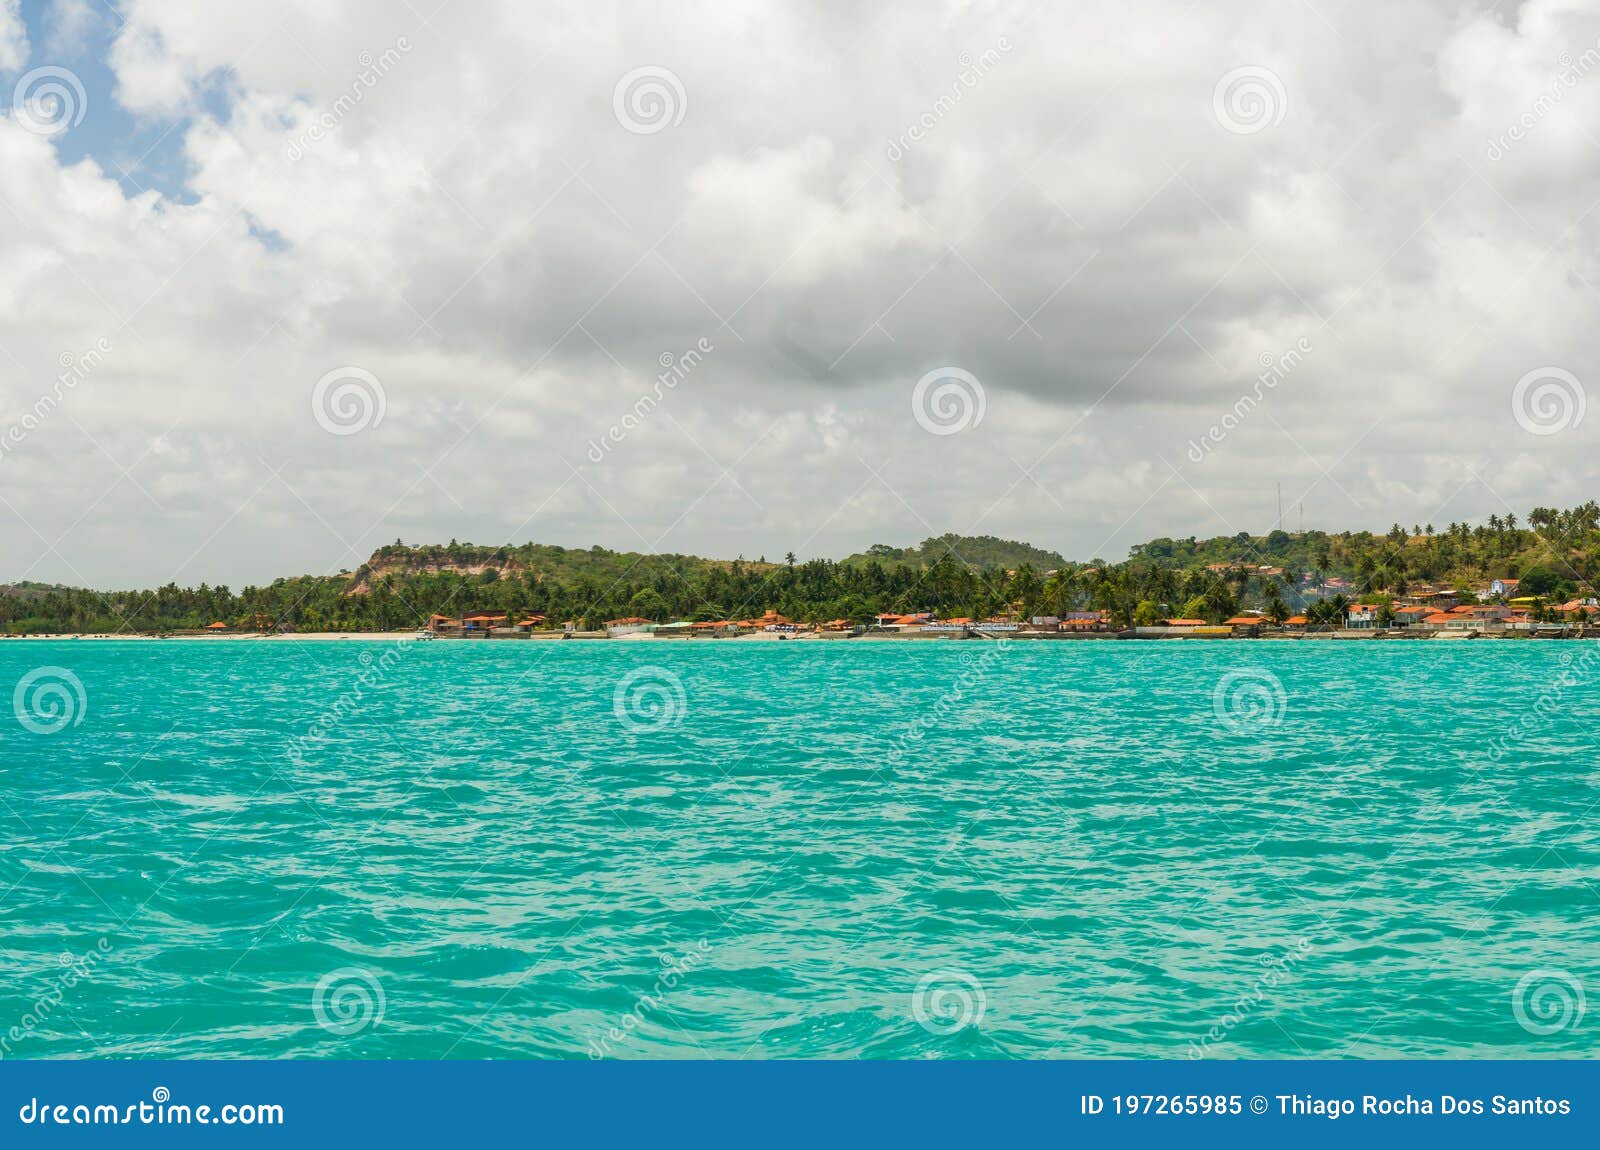 linda imagem de barco navegando em um paraÃÂ­so tropical.beautiful image of boat sailing in a tropical paradise